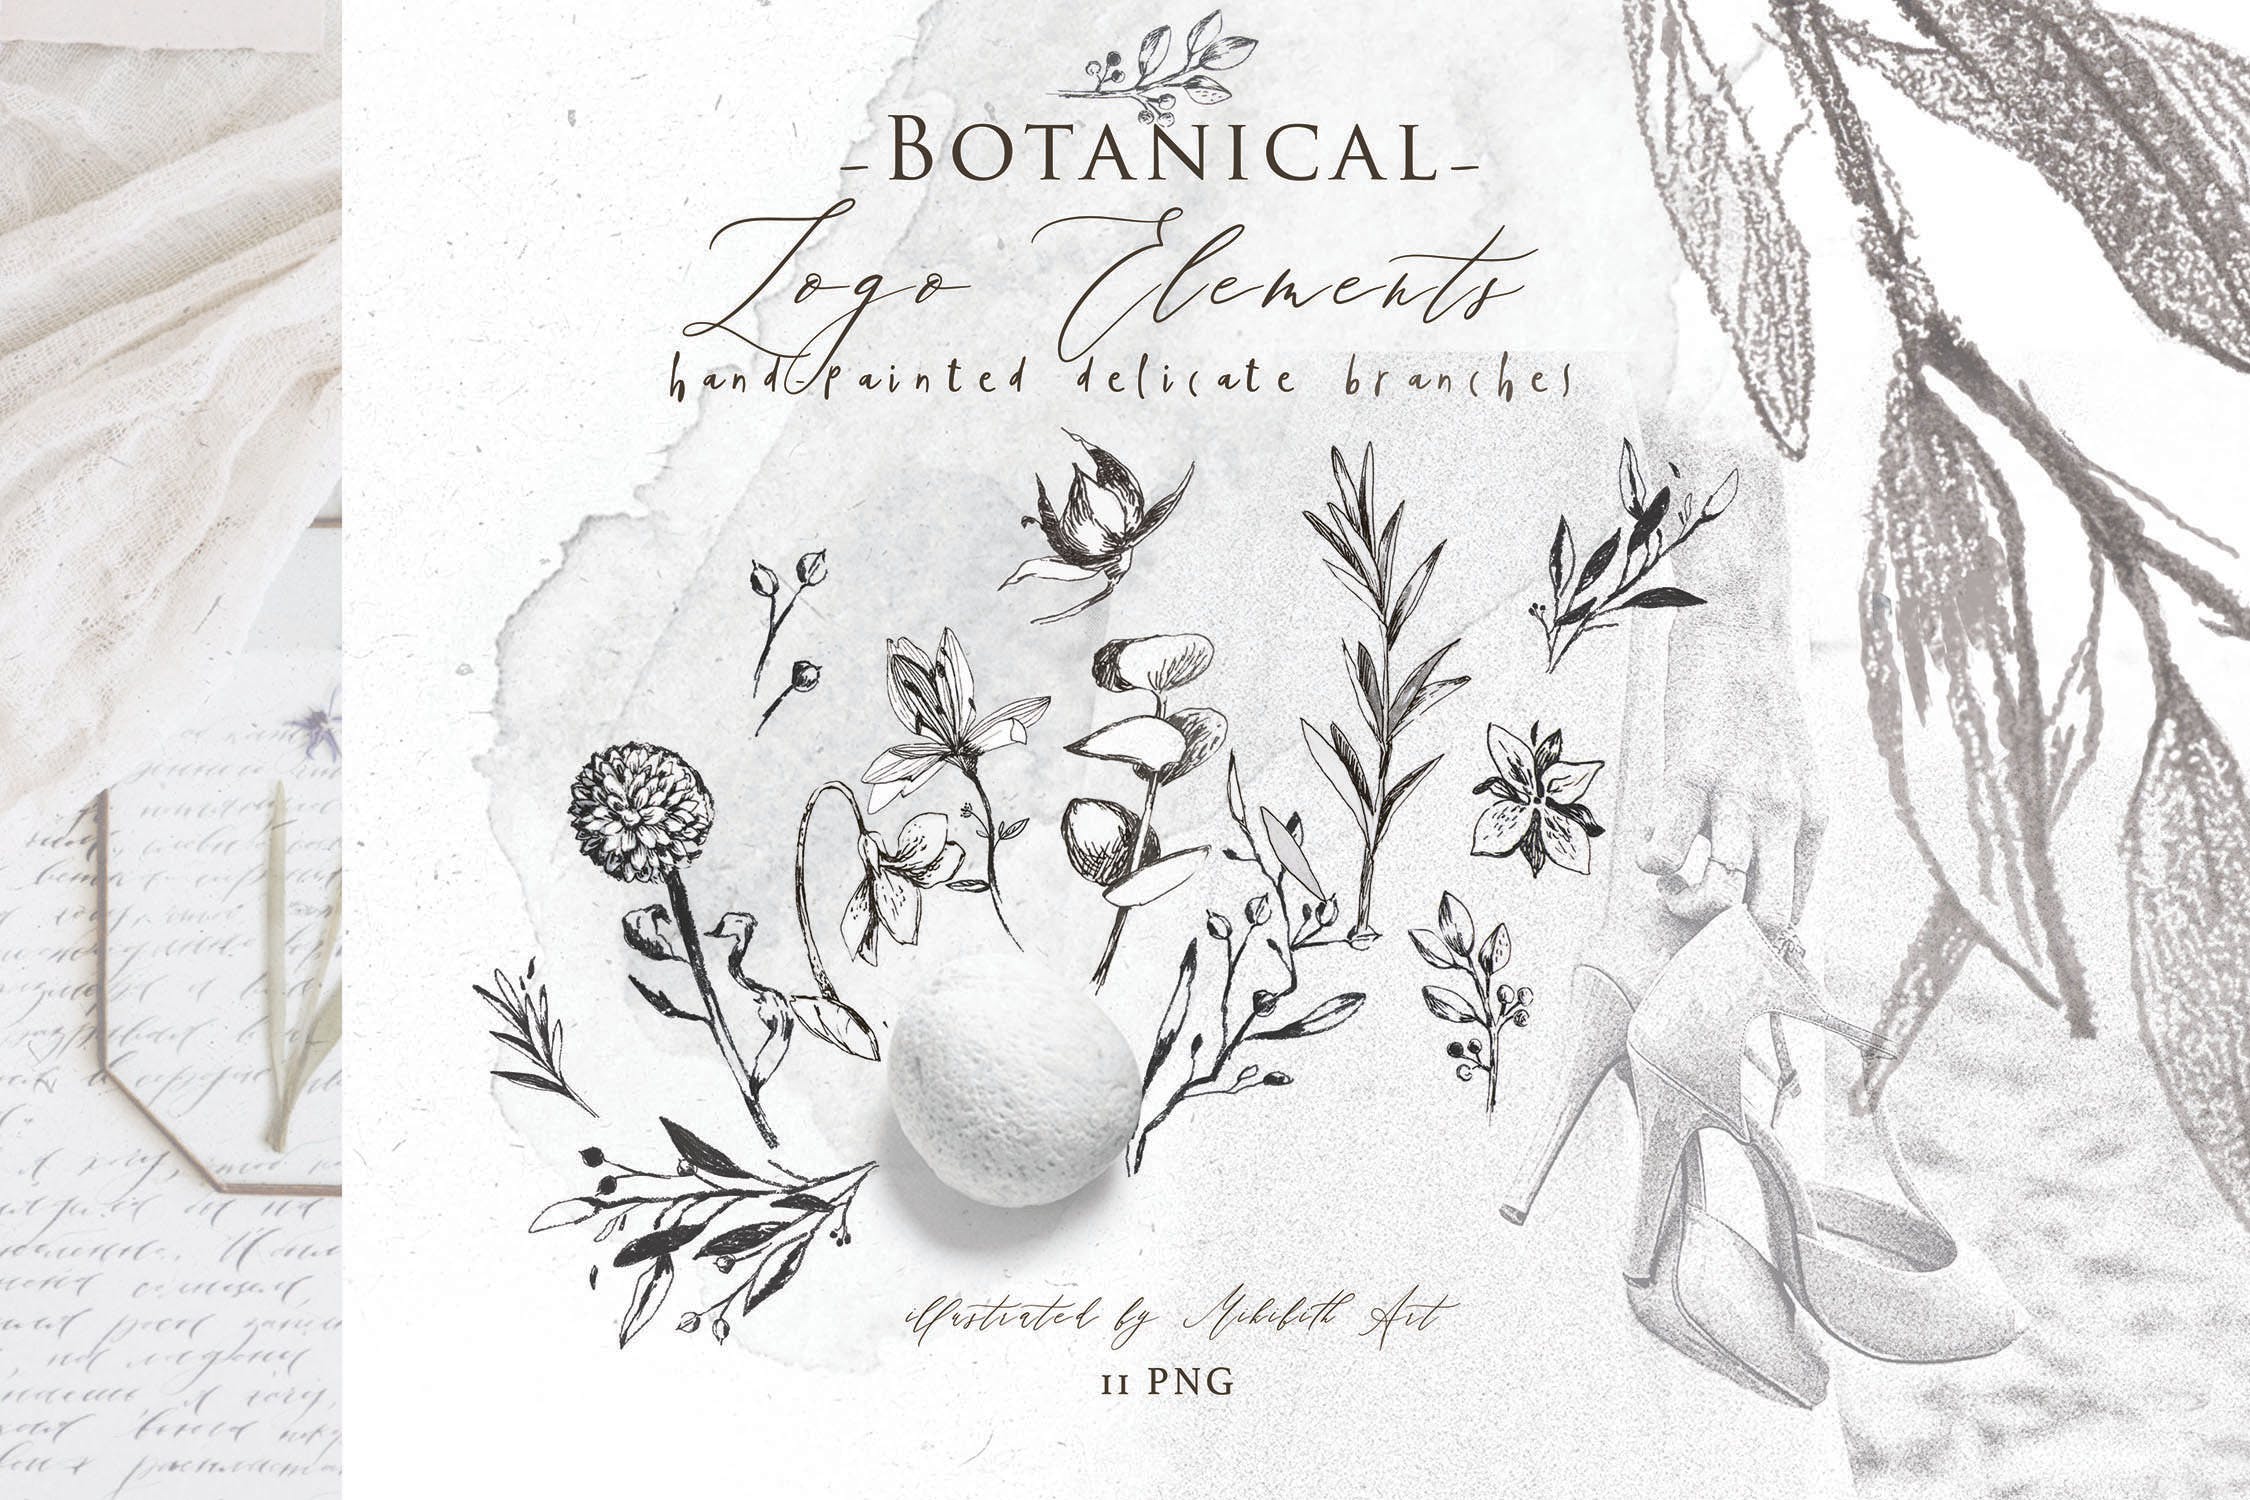 优雅风格植物Logo标志元素设计素材v3 BOTANICAL LOGO ELEMENTS vol.3插图4